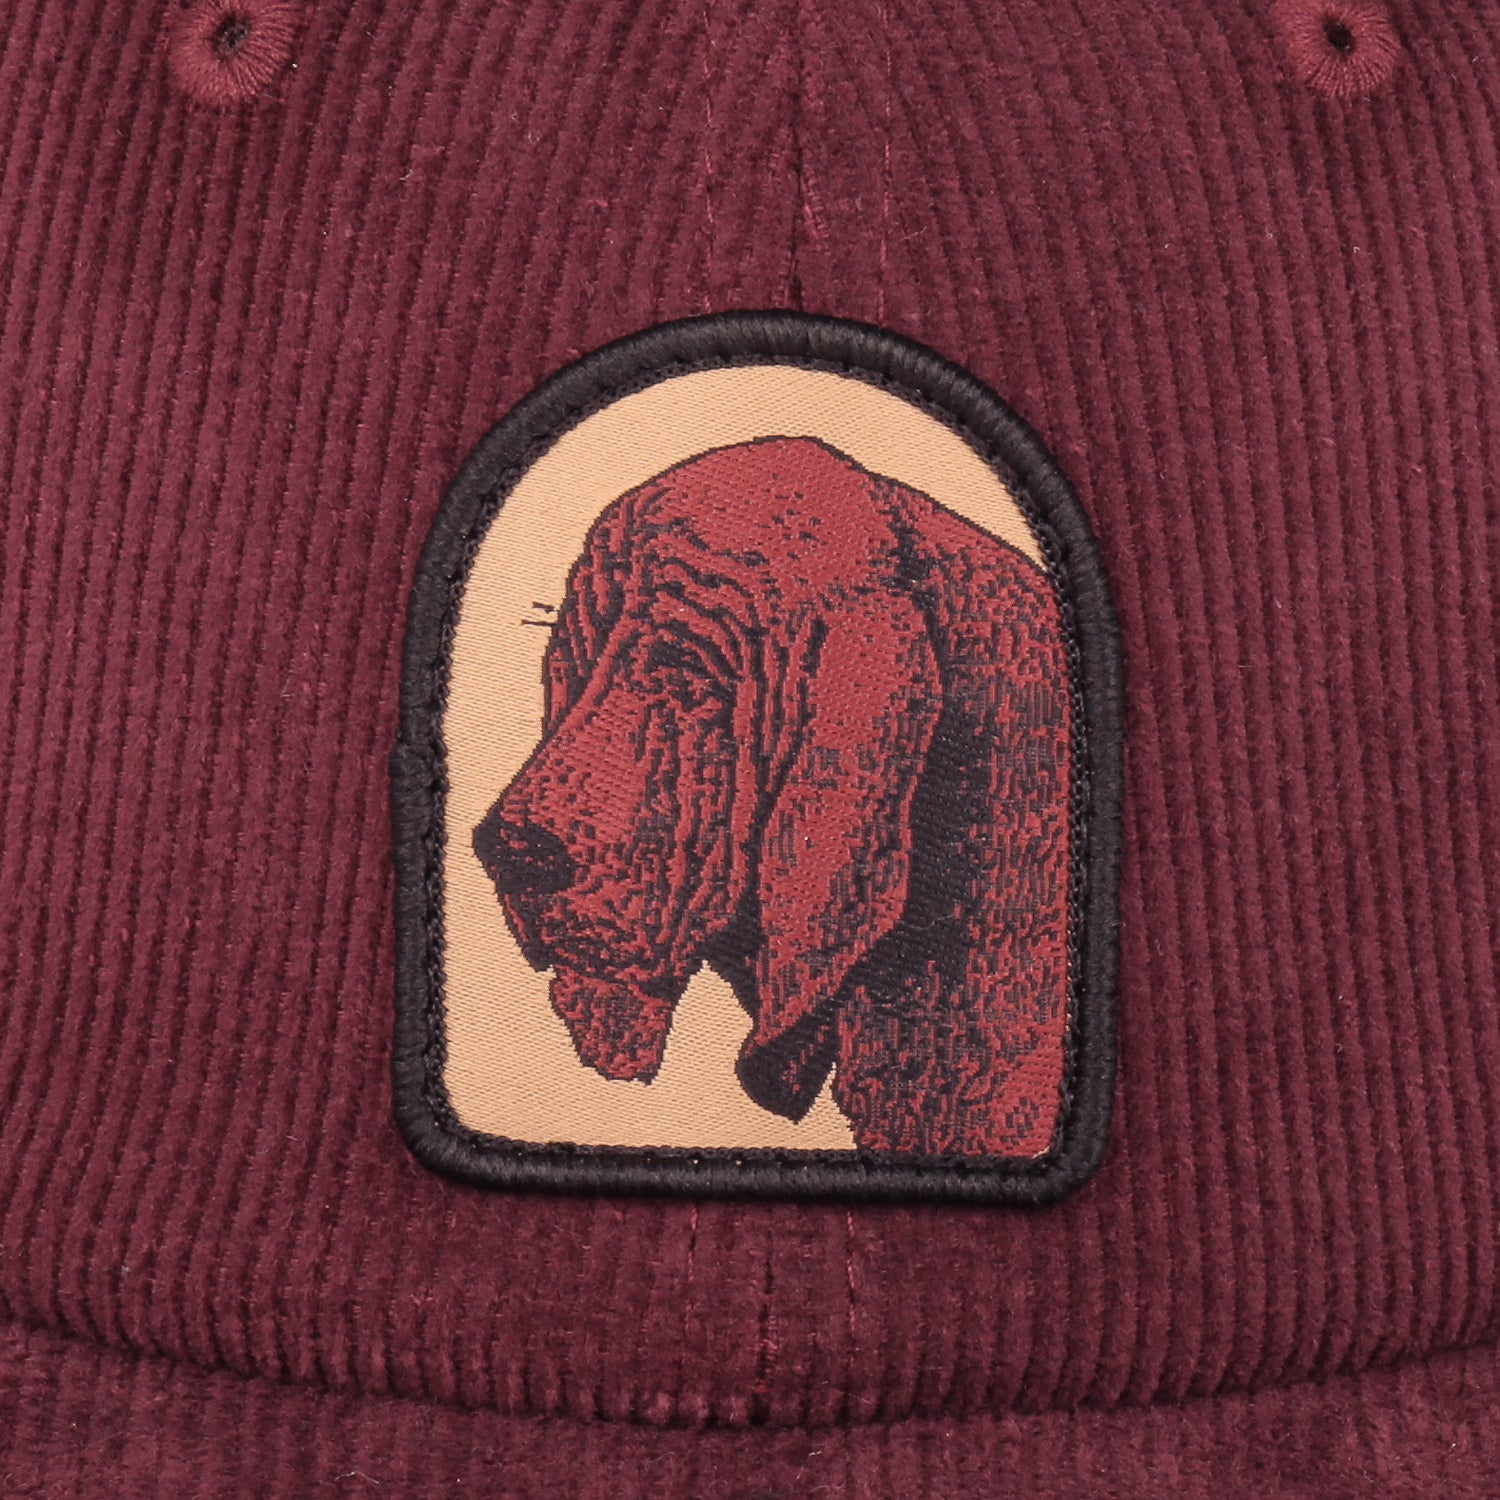 Bloodhound 5 Panel Cap (Burgundy)